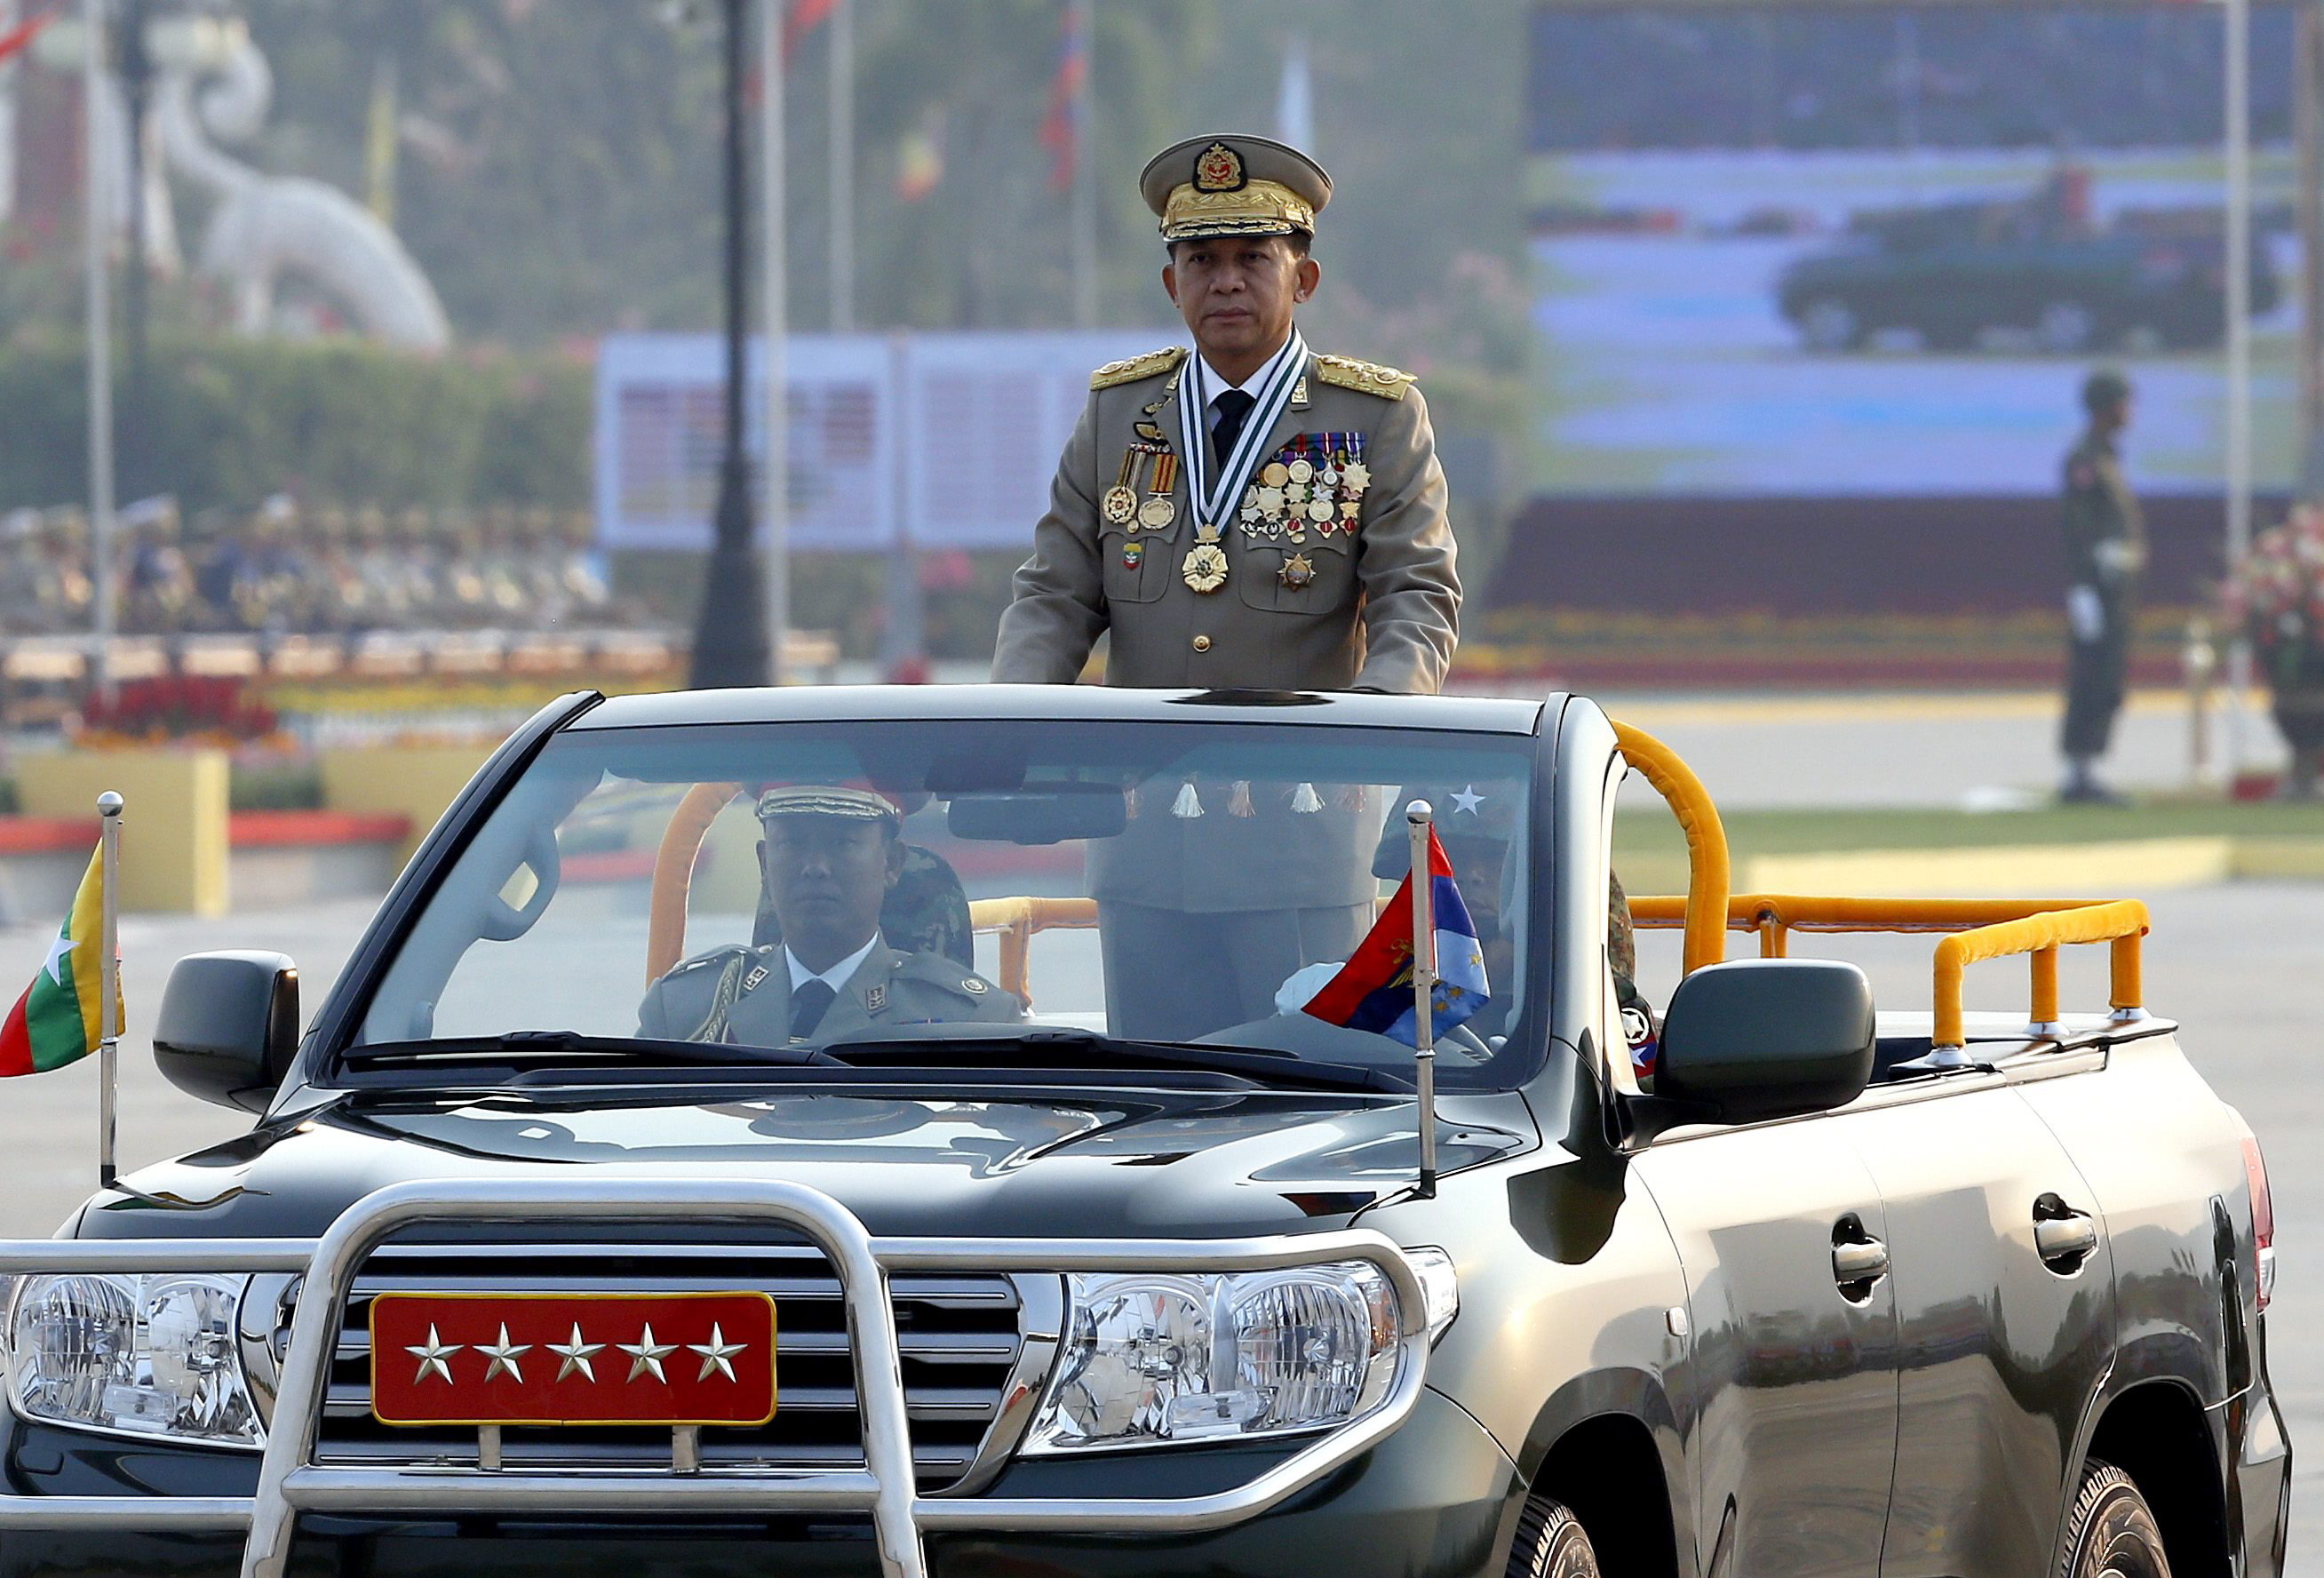 epa05232363 Myanmar Senior General Min Aung Hlaing (C) inspiziert Truppen während einer Parade zum Gedenken an den 71. Tag der Streitkräfte in Naypyitaw, Myanmar, 27. März 2016. Die Regierung von Myanmar feierte den 71. Tag der Streitkräfte zum Gedenken an t